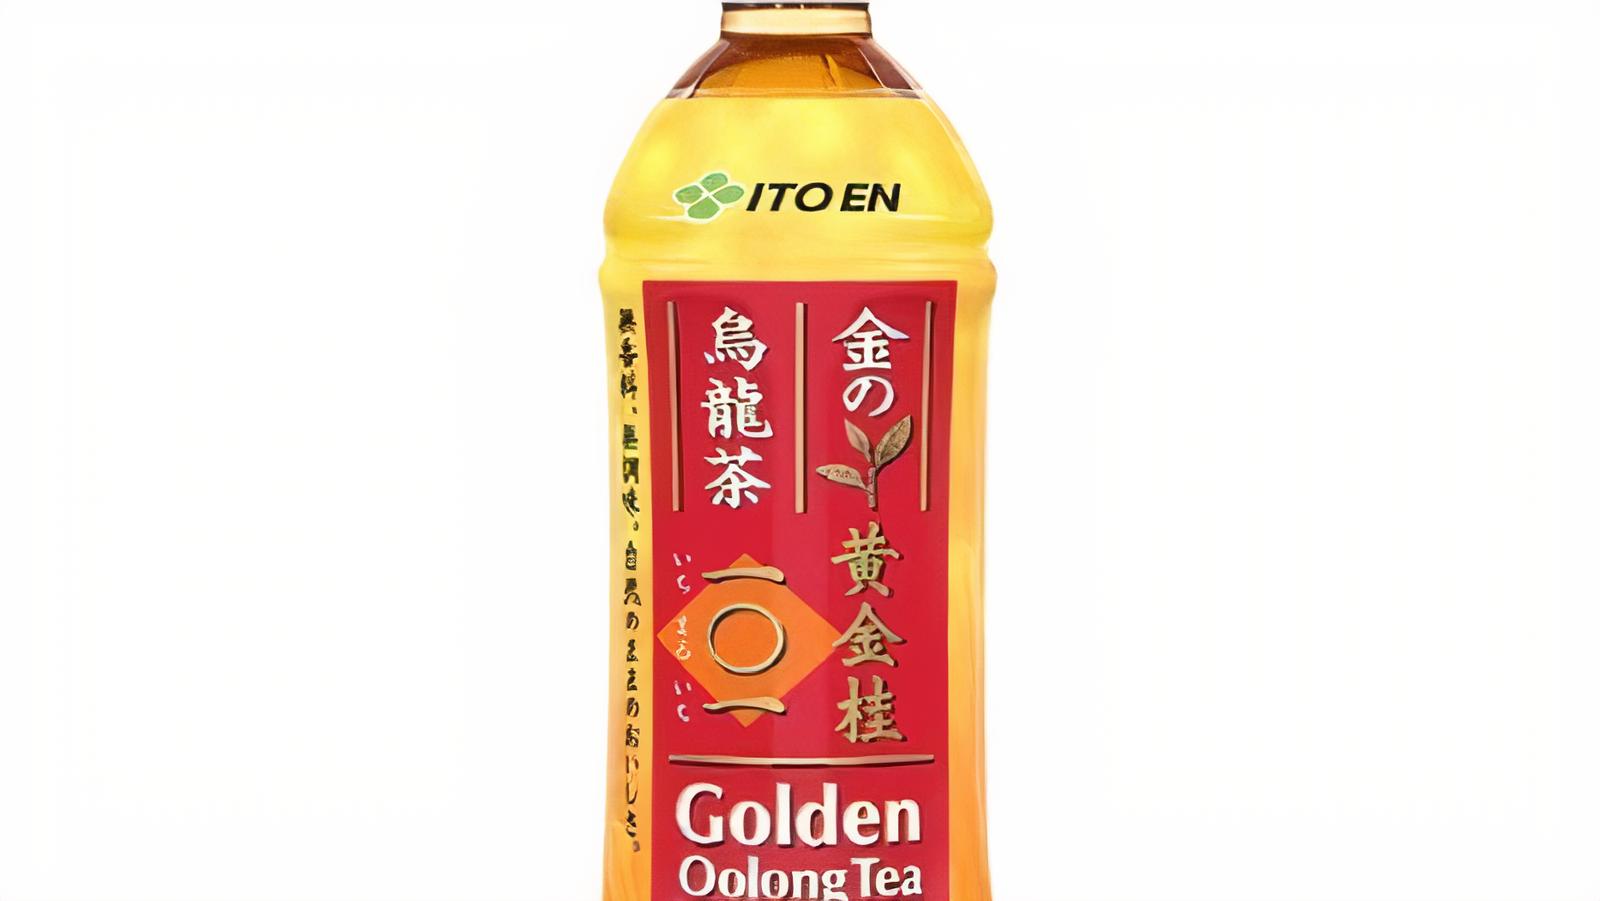 Itoen Golden Oolong Tea (6.9oz)